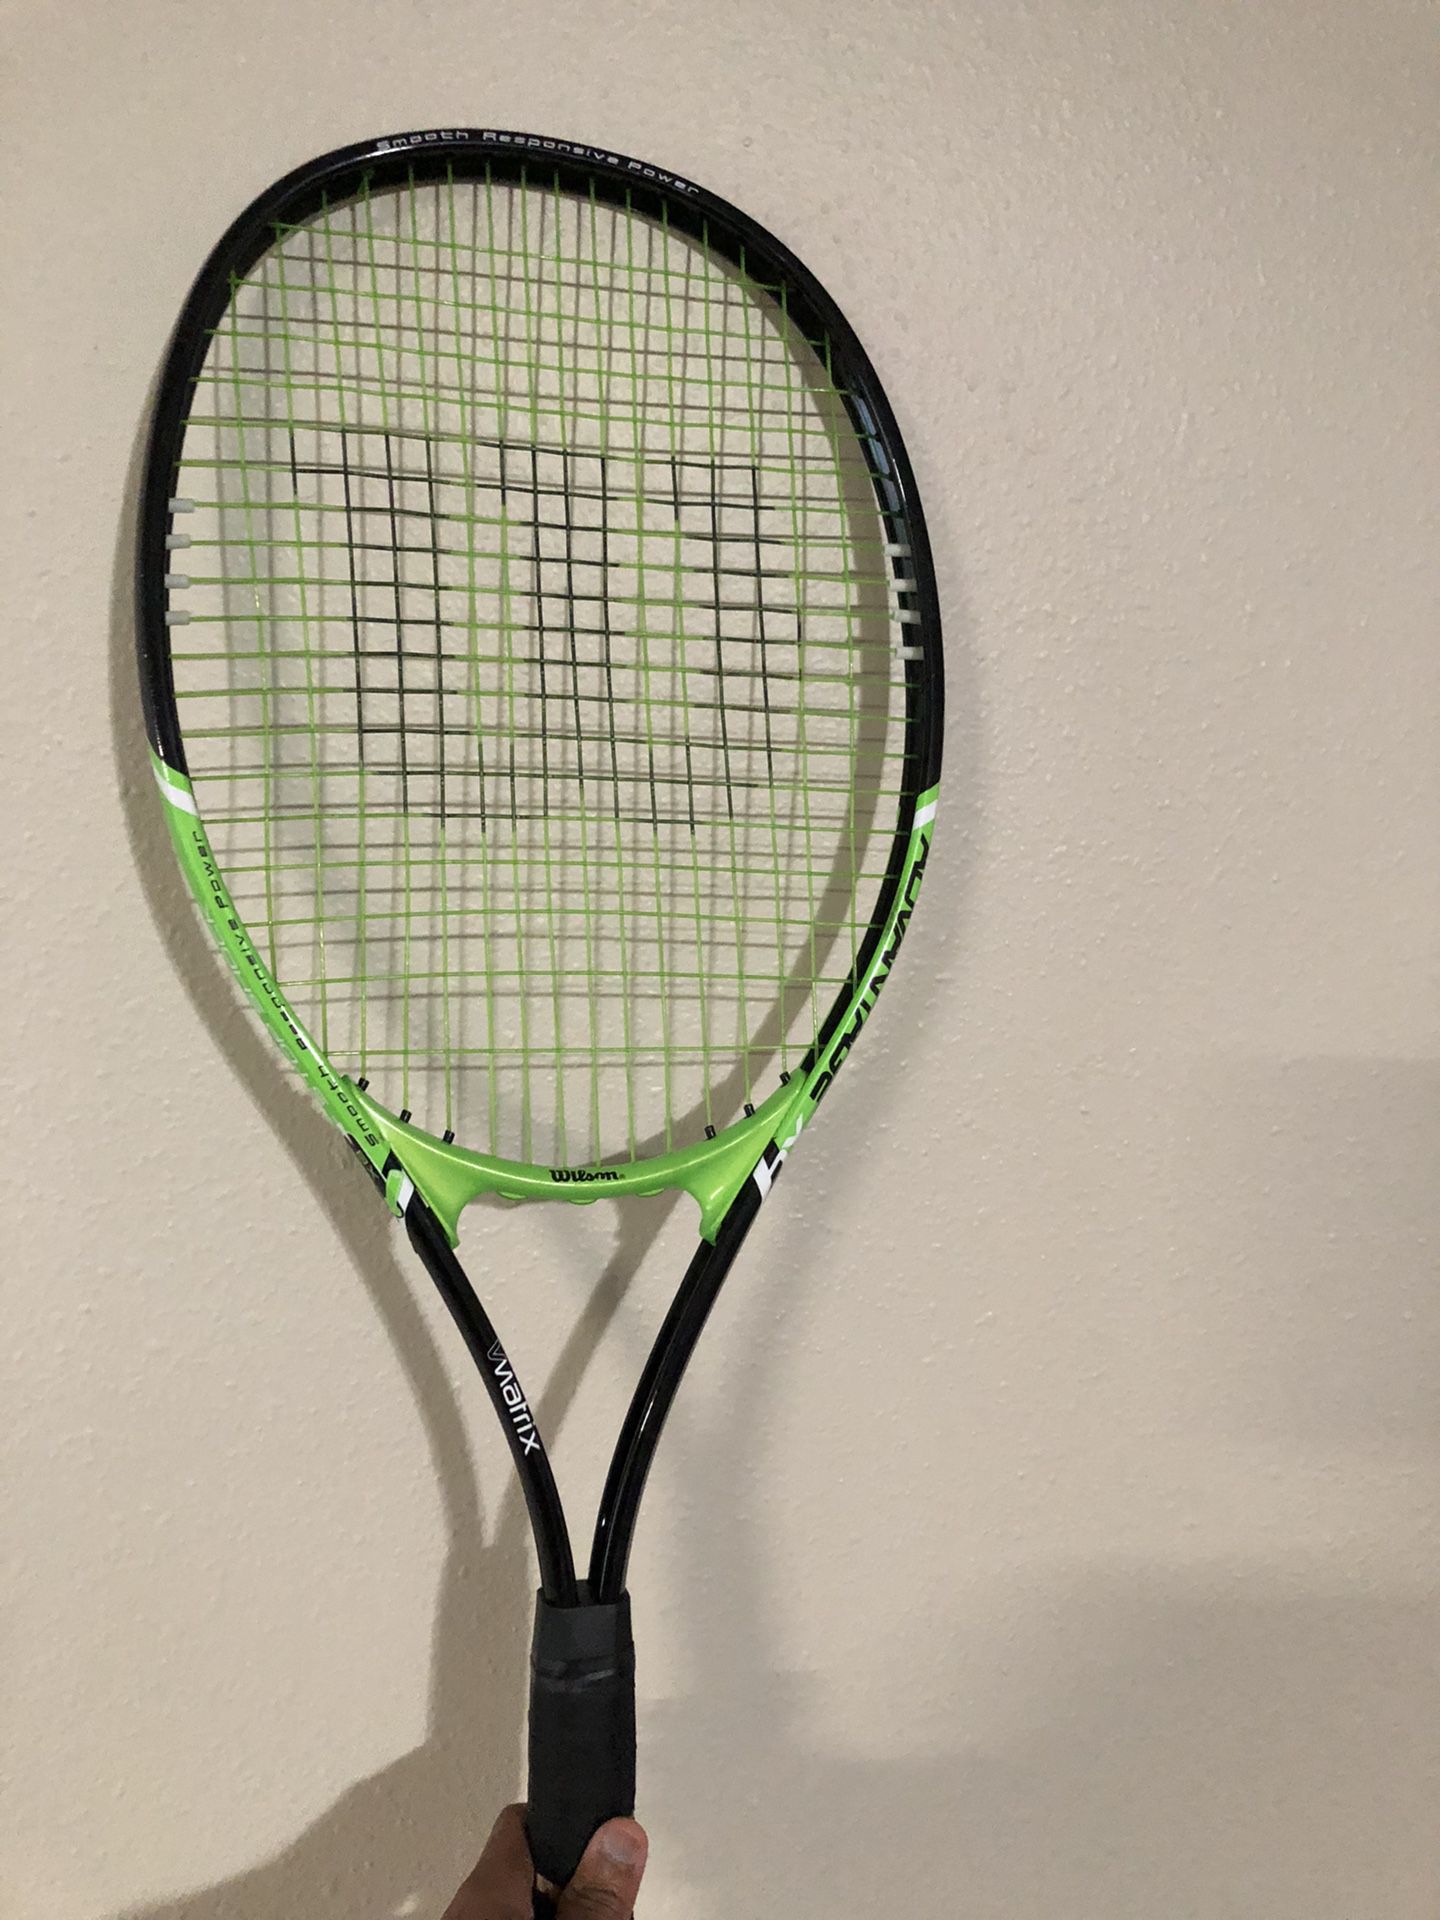 Wilson Advantage XL tennis racket